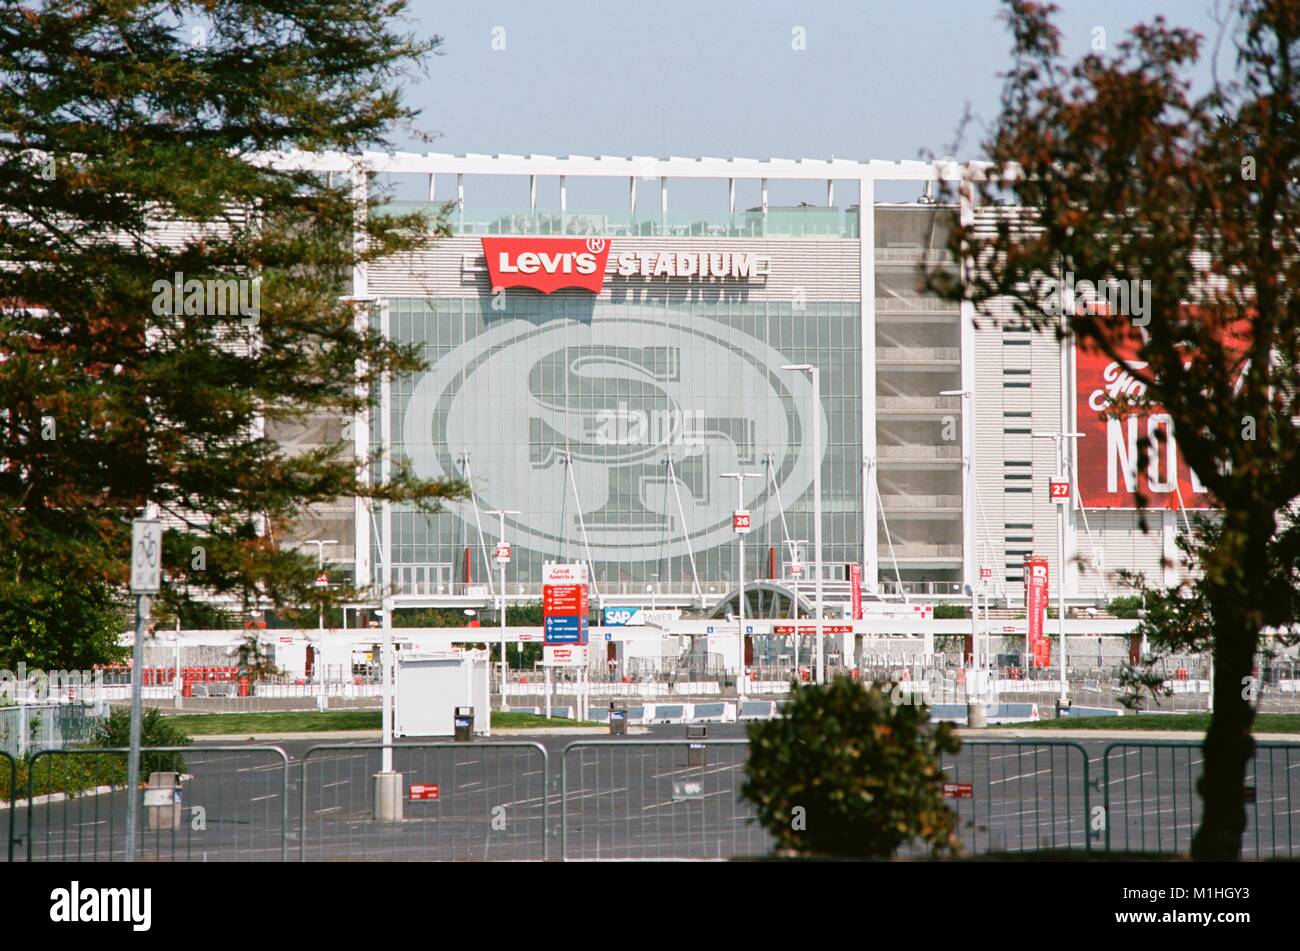 Vue de côté de Levi's, stade des San Francisco 49ers de l'équipe de football, vue à travers les arbres dans une aire de stationnement, dans la Silicon Valley, Santa Clara, Californie, 17 août 2017. () Banque D'Images